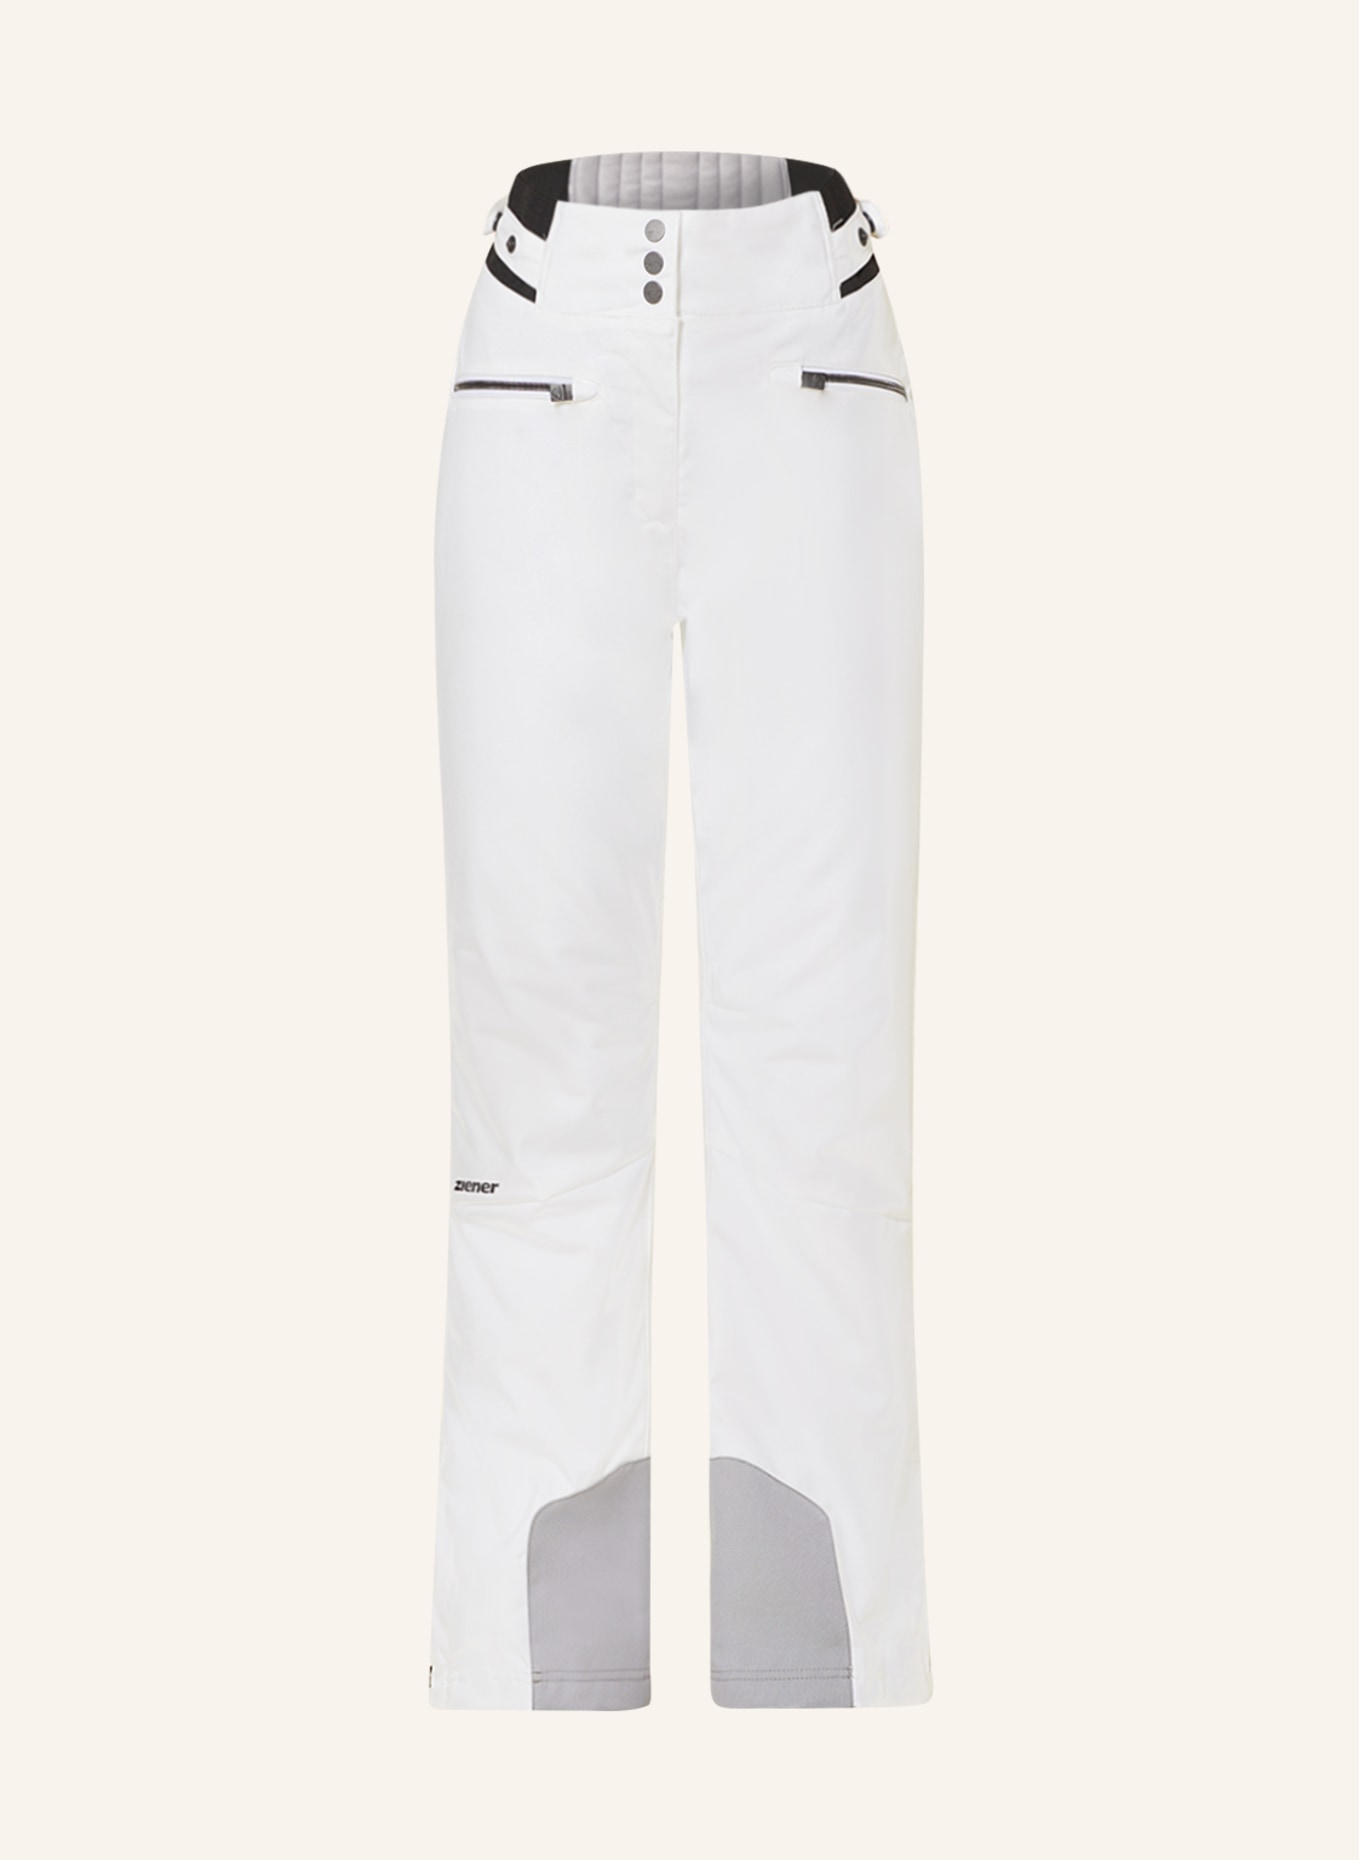 ziener Ski pants TILLA in white